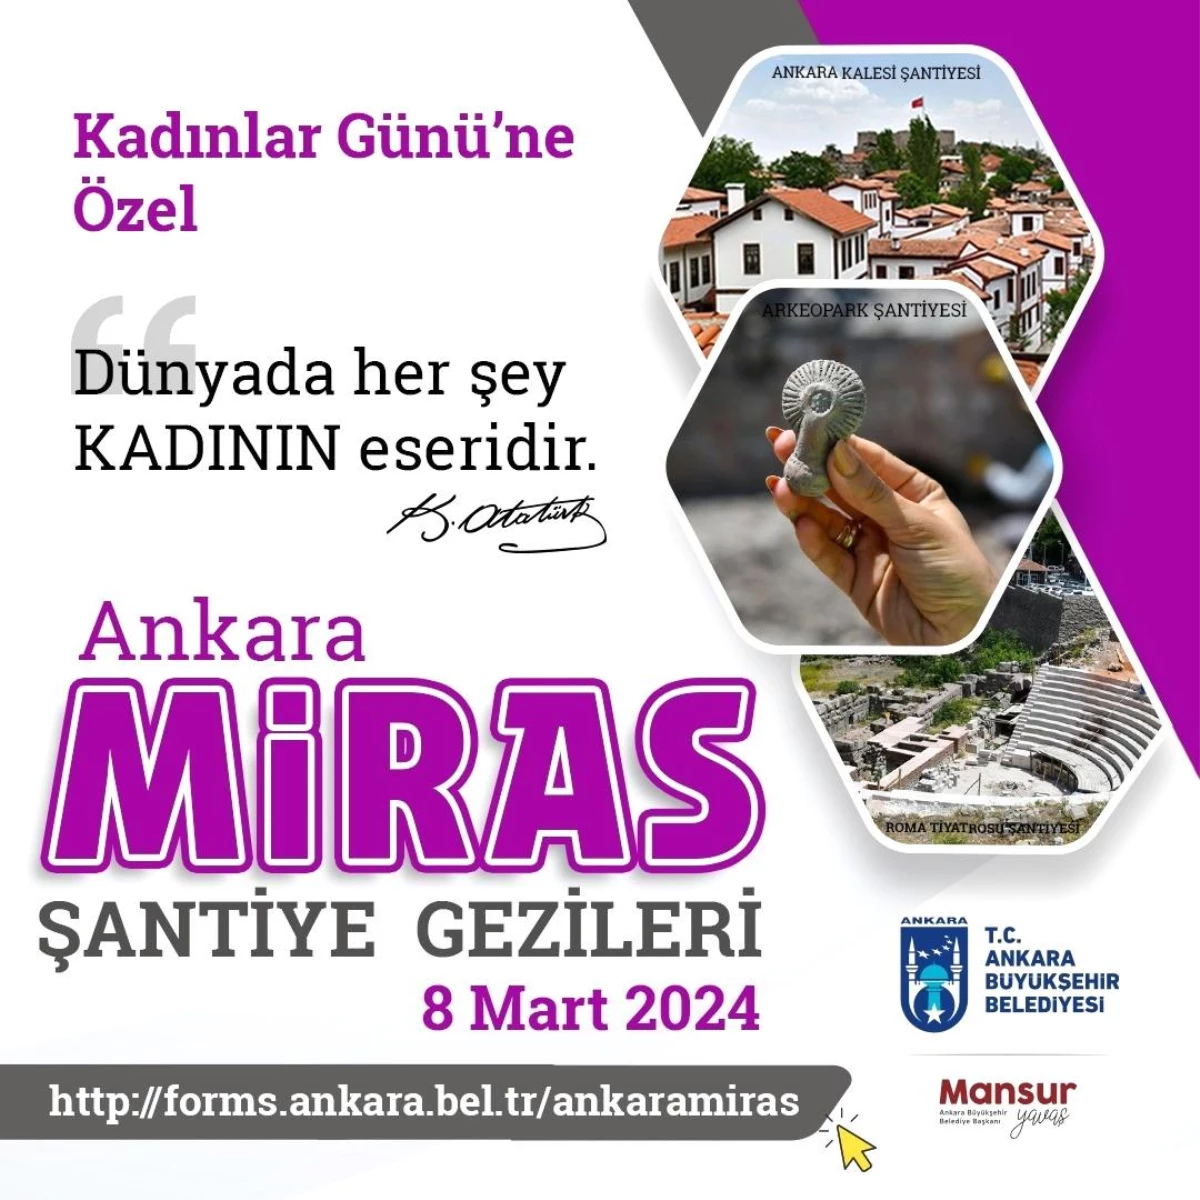 Ankara Büyükşehir Belediyesi, 8 Mart Dünya Kadınlar Günü\'nde şantiye gezileri düzenleyecek